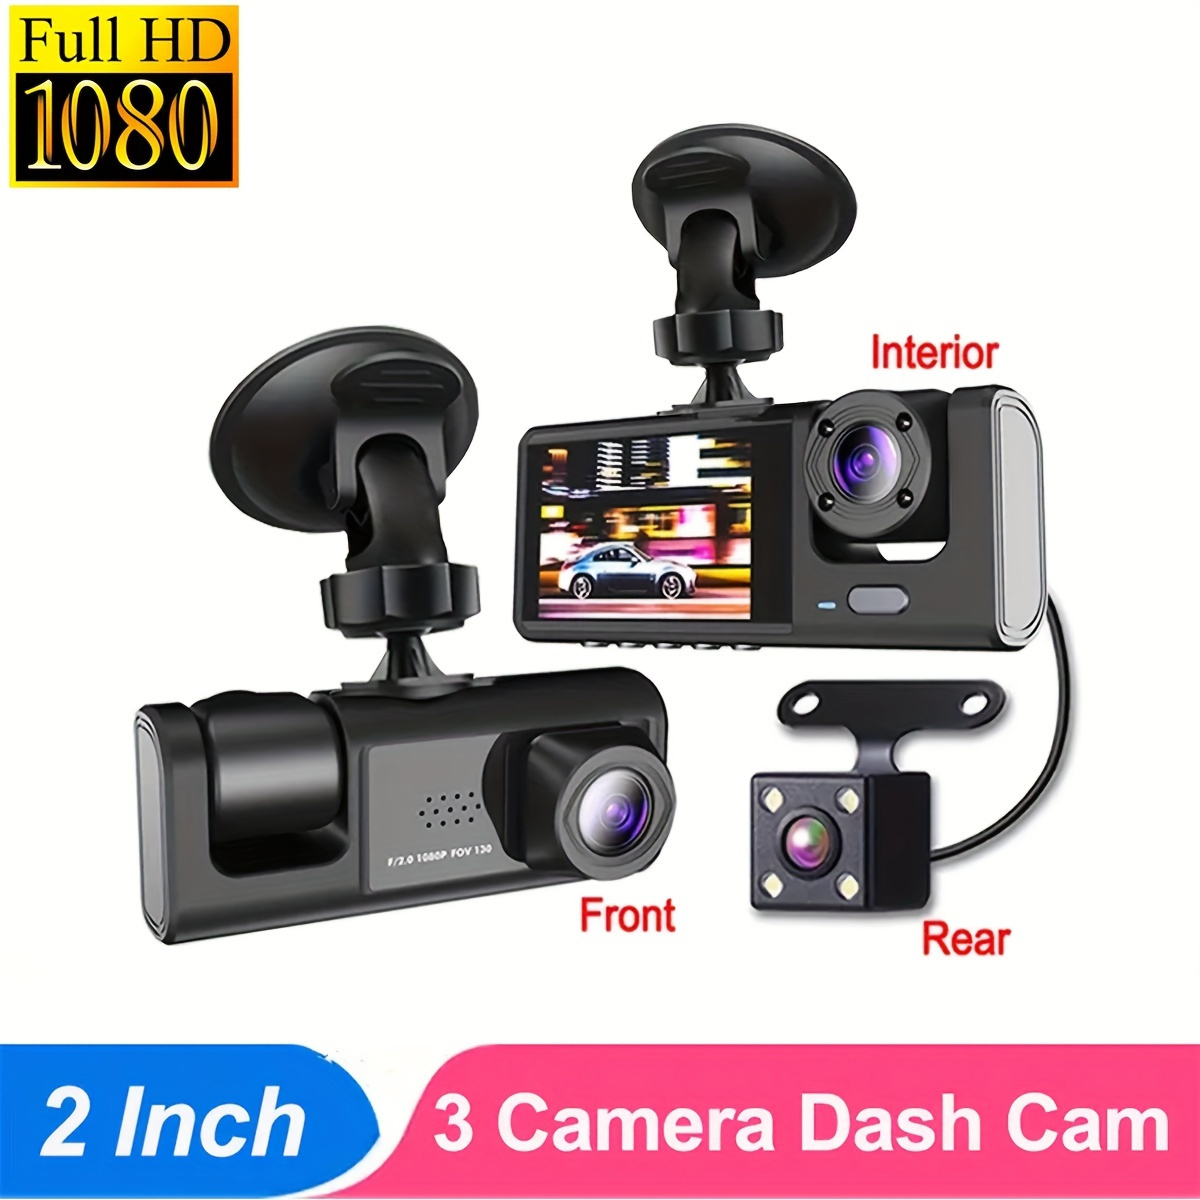 AZDOME M550 Dash Cam Review - 3 Camera Recording! 📷🚗 : r/dashcams